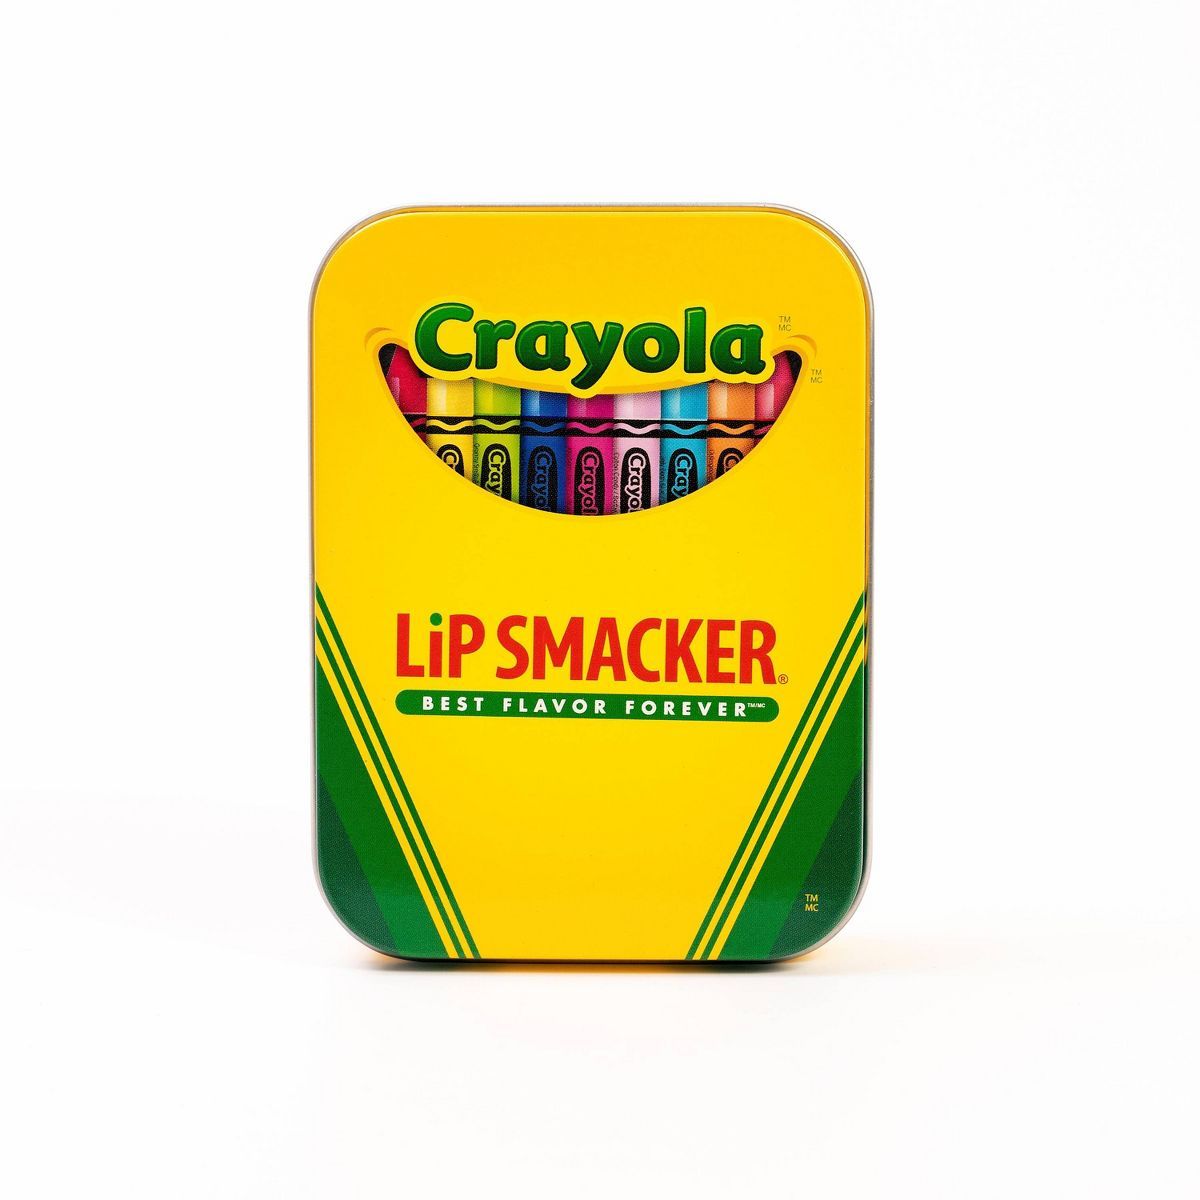 Lip Smacker Tin - Crayola - 3pc - 1oz | Target